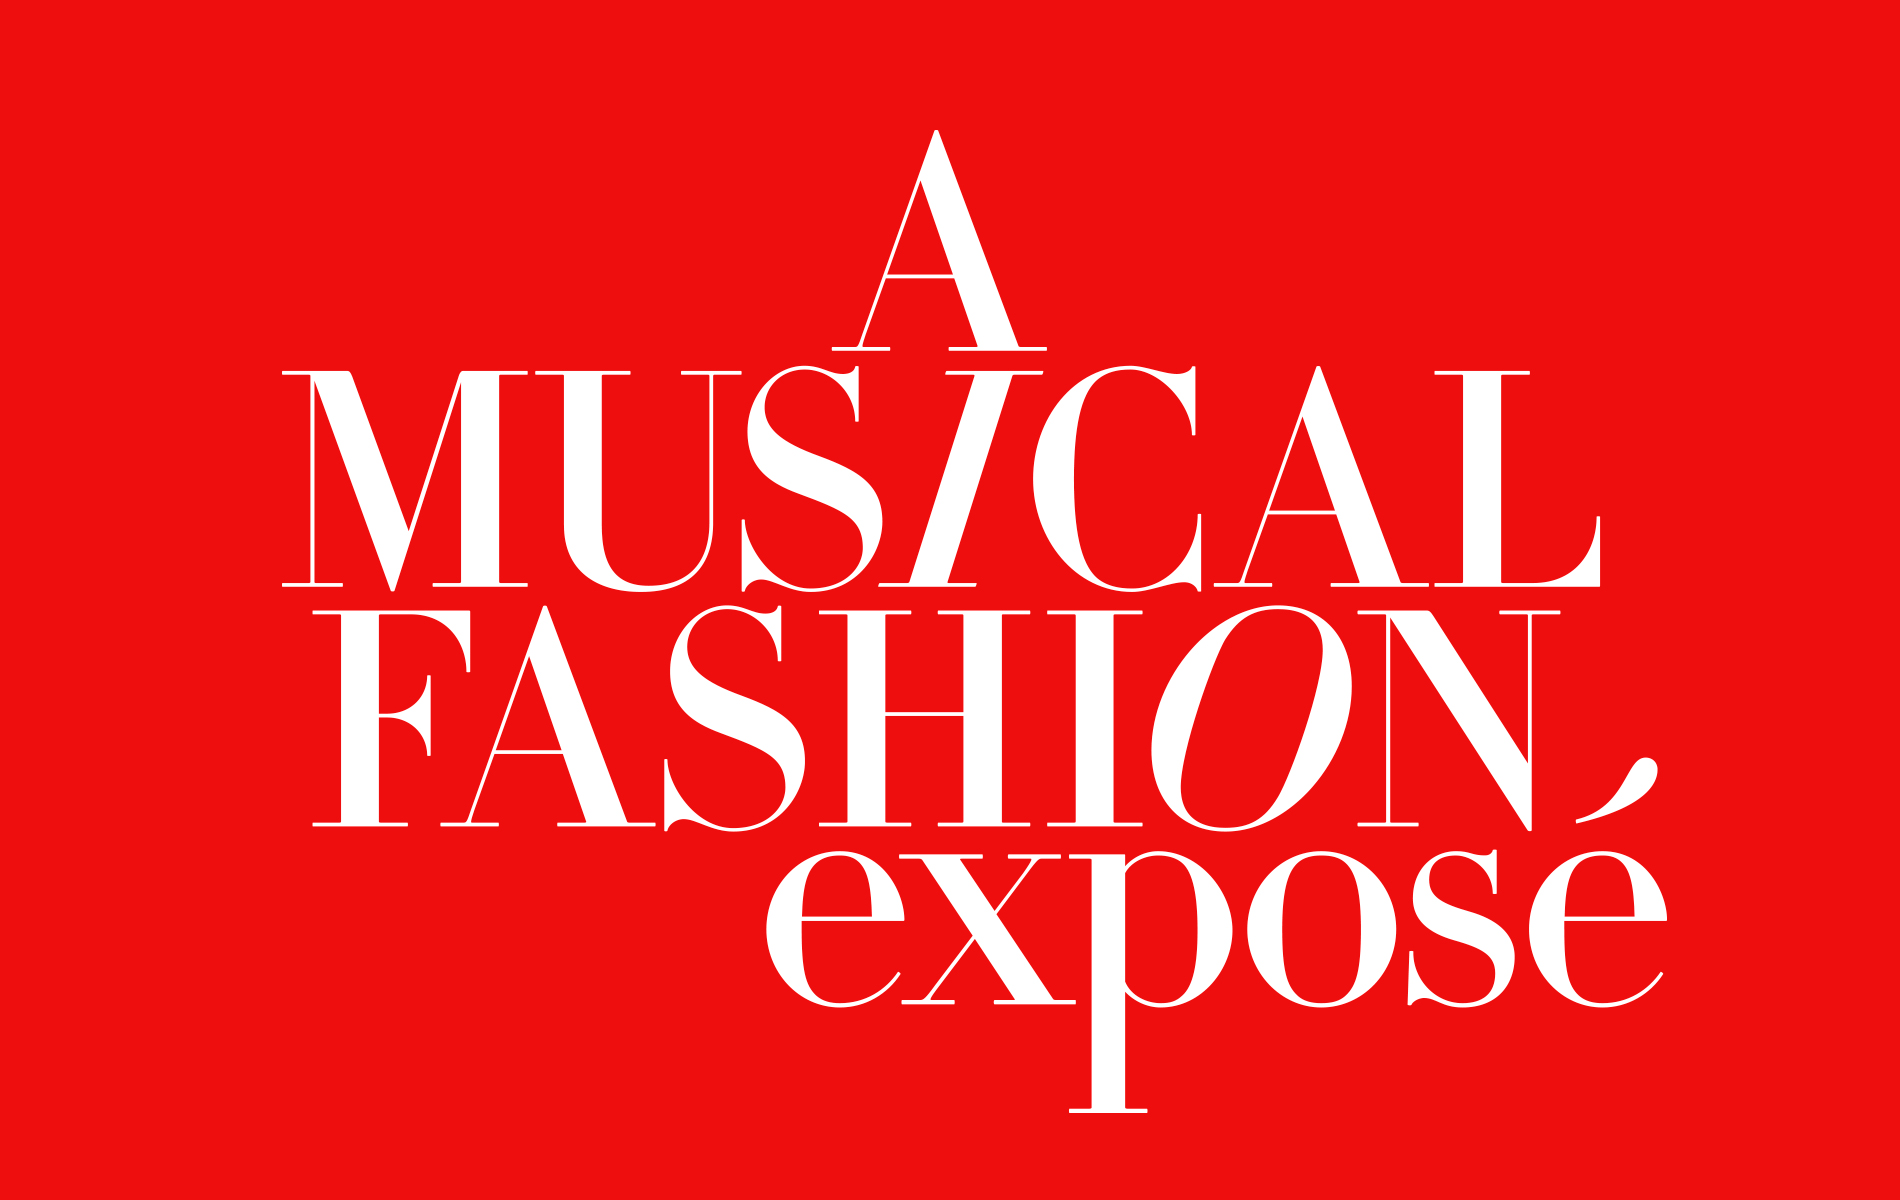 A Musical Fashion Exposé